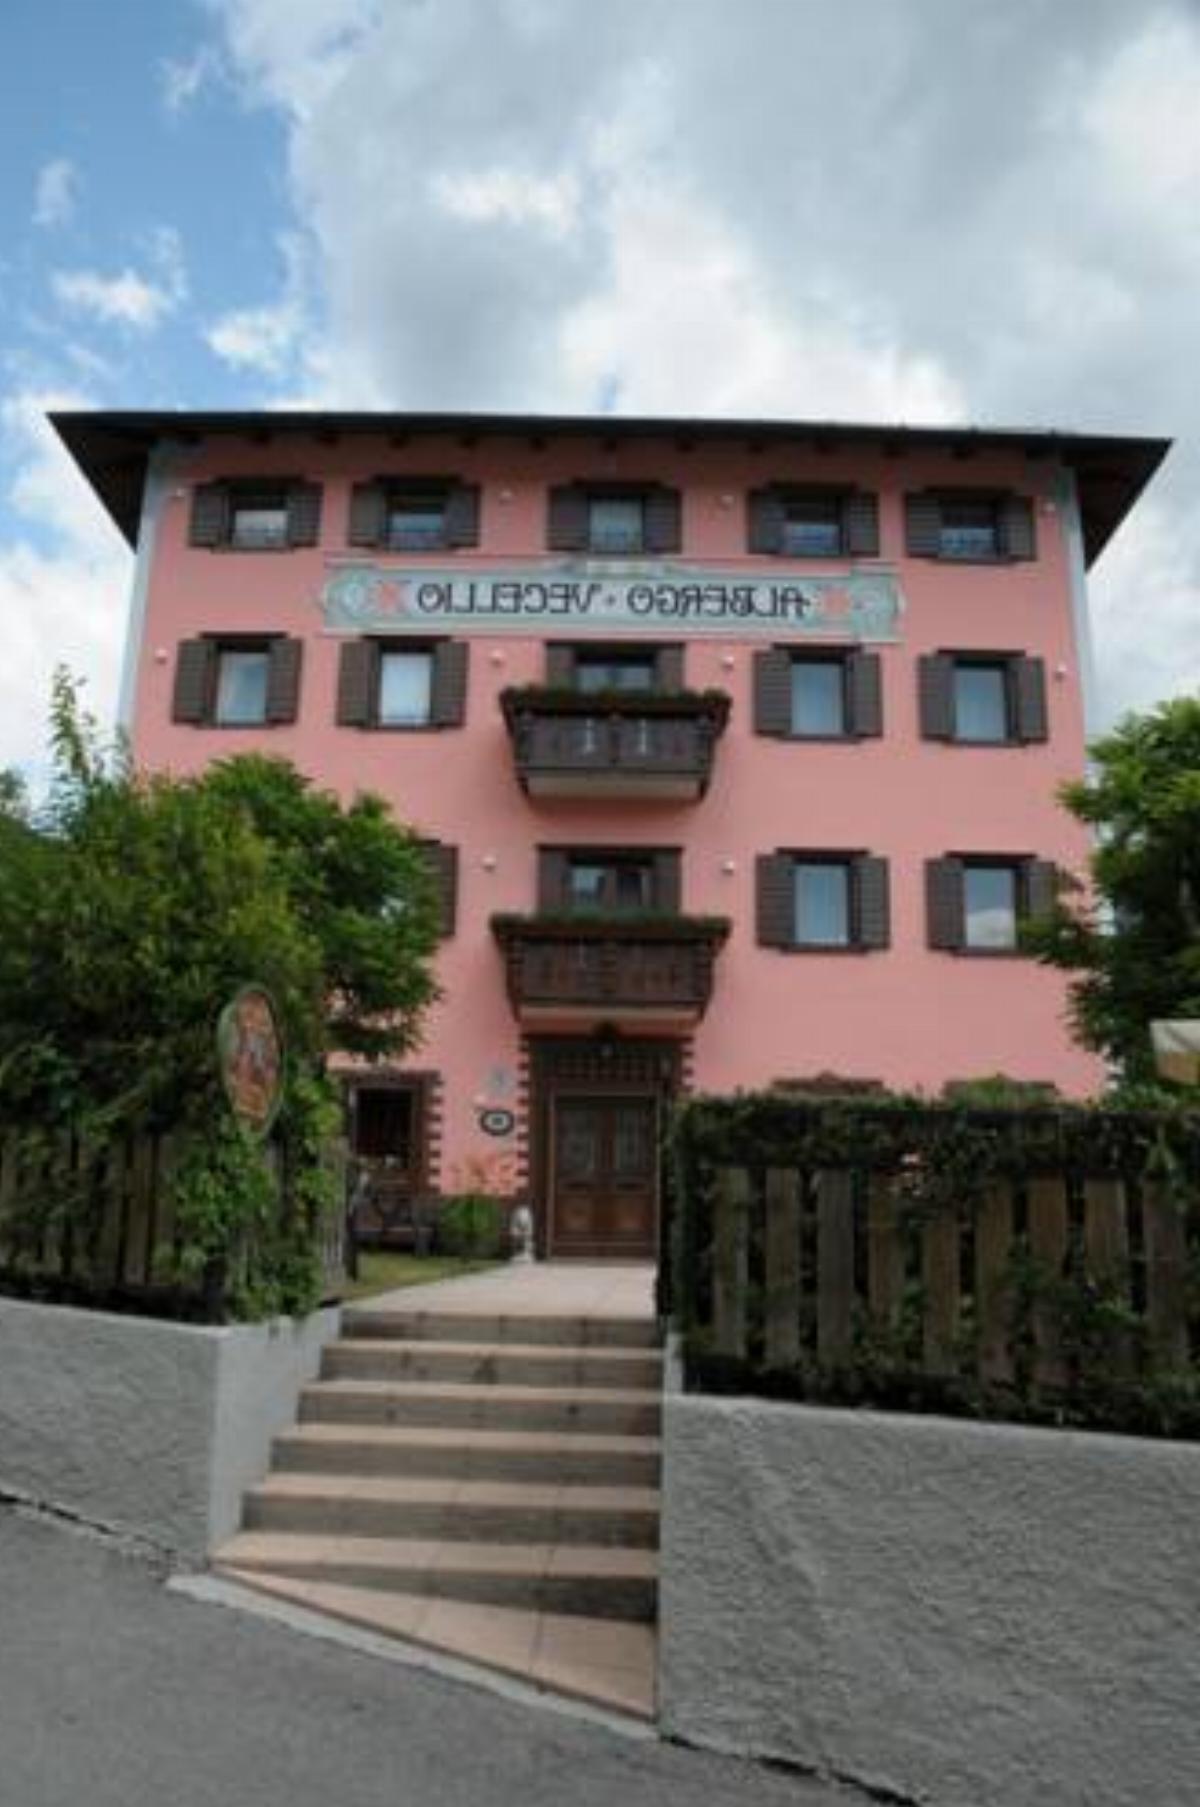 Albergo Vecellio Hotel Auronzo di Cadore Italy